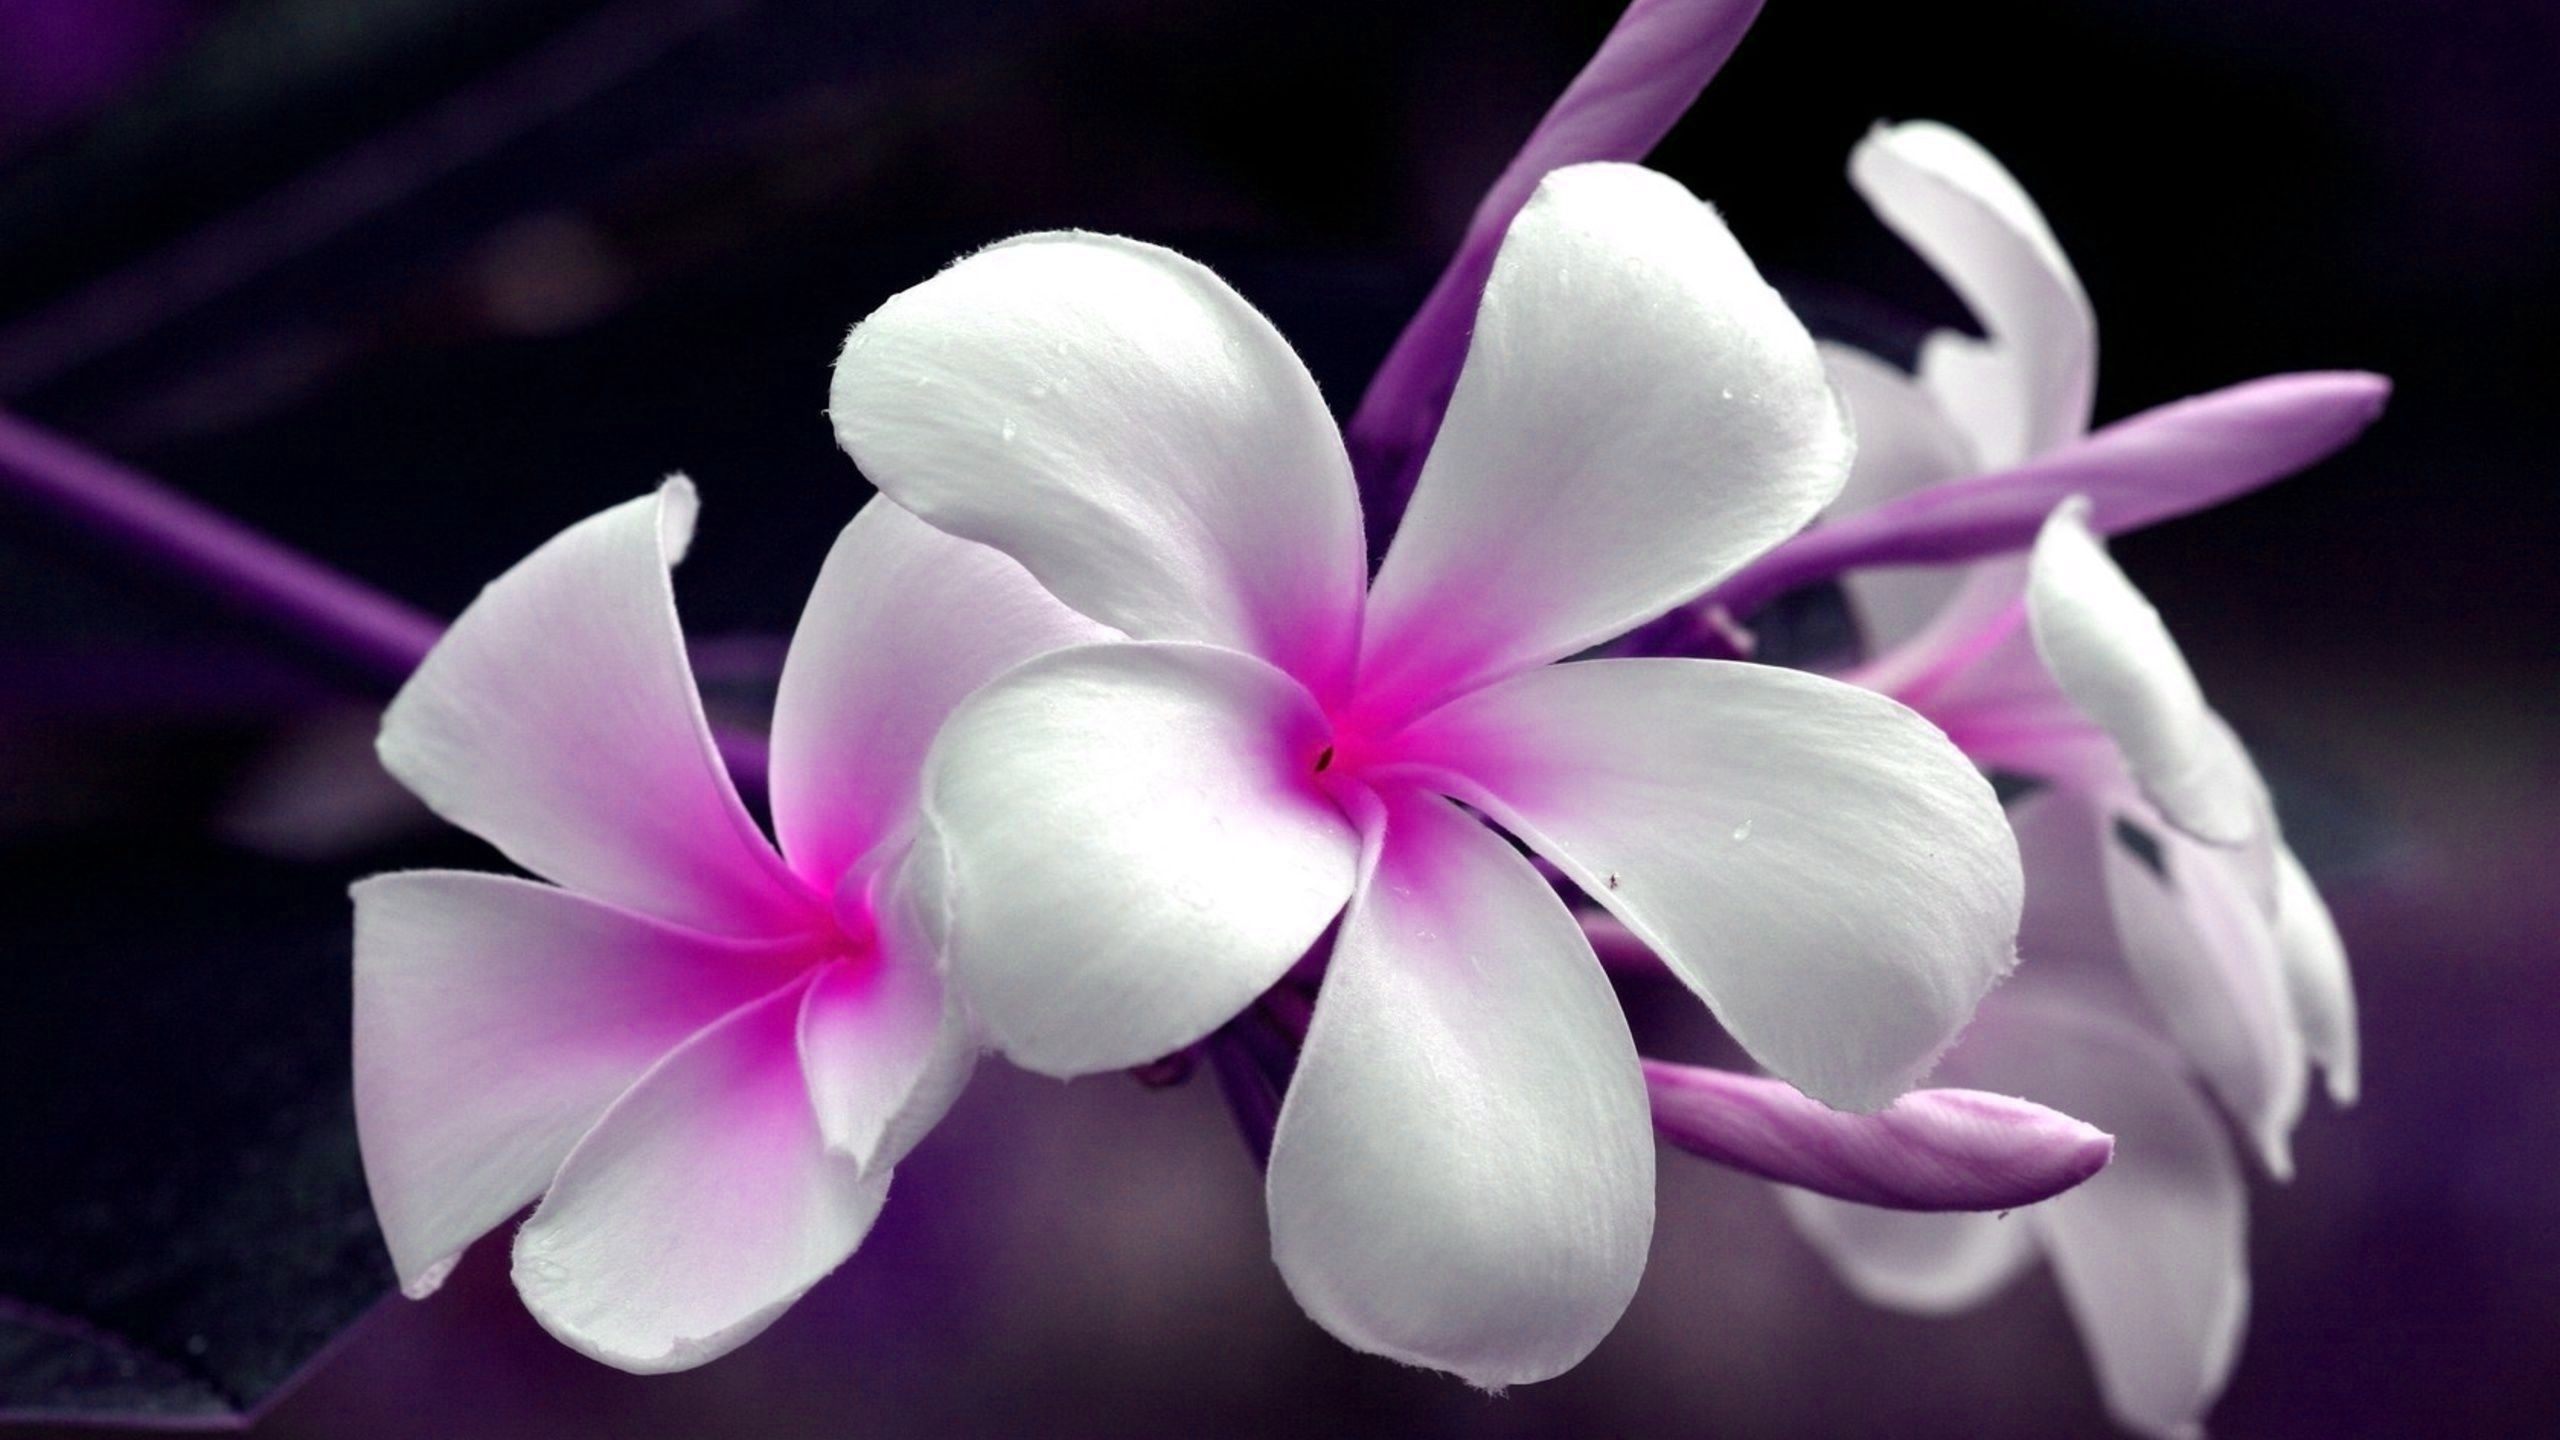 plumeria, earth, frangipani, flower, white flower, flowers